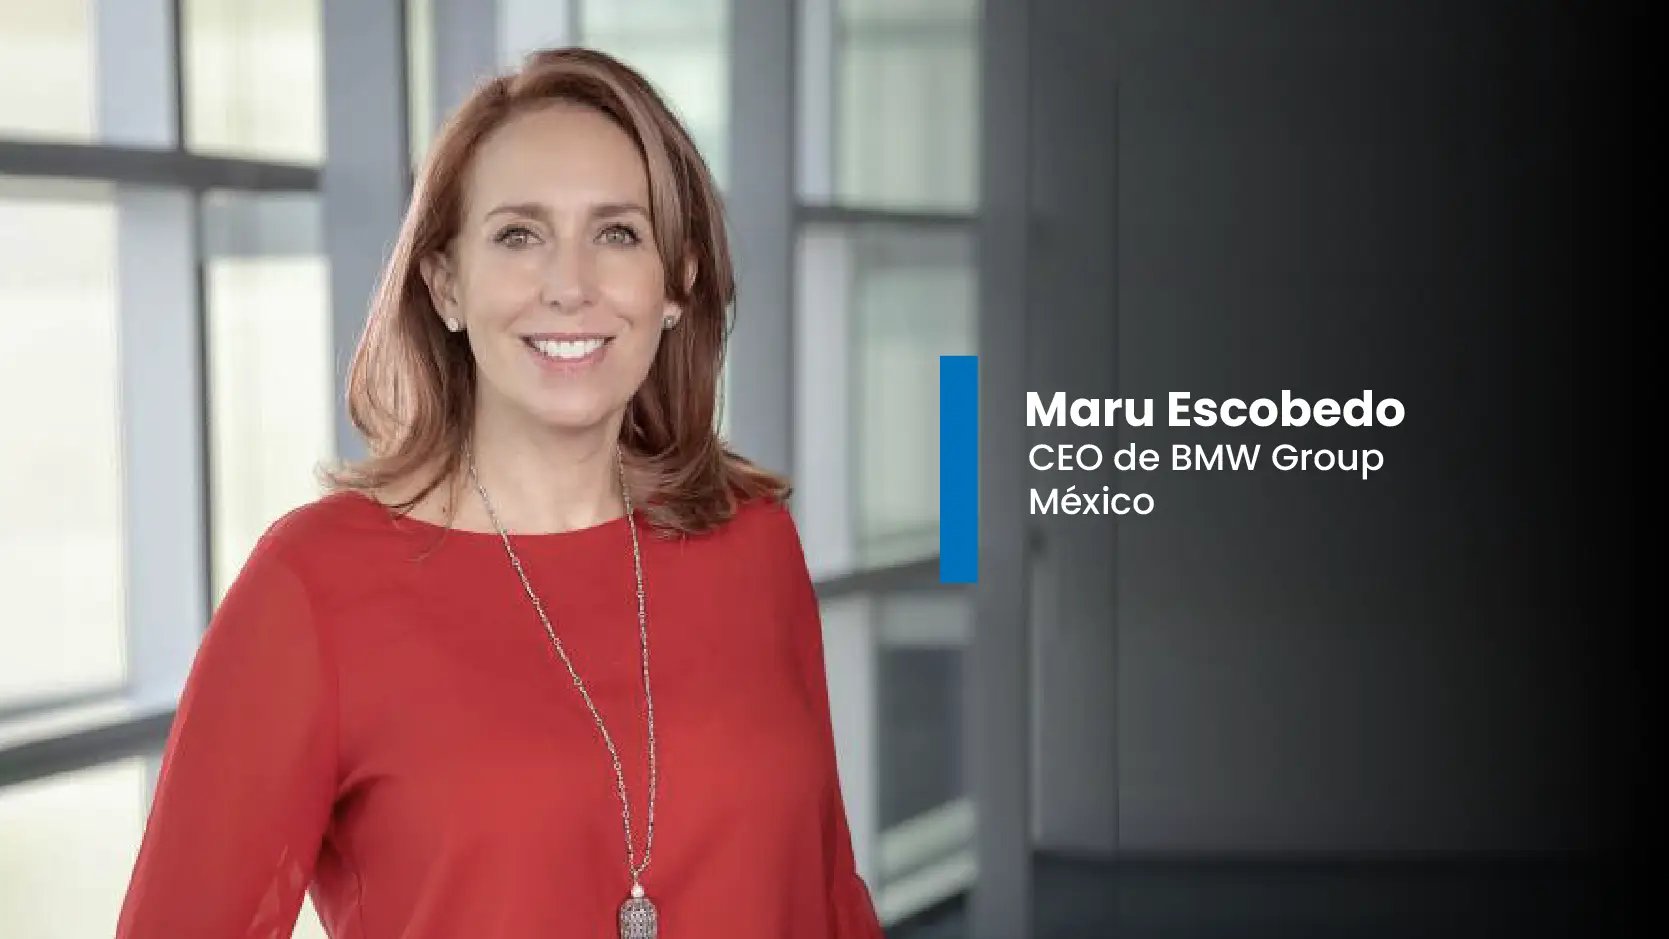 Maru Escobedo CEO de BMW